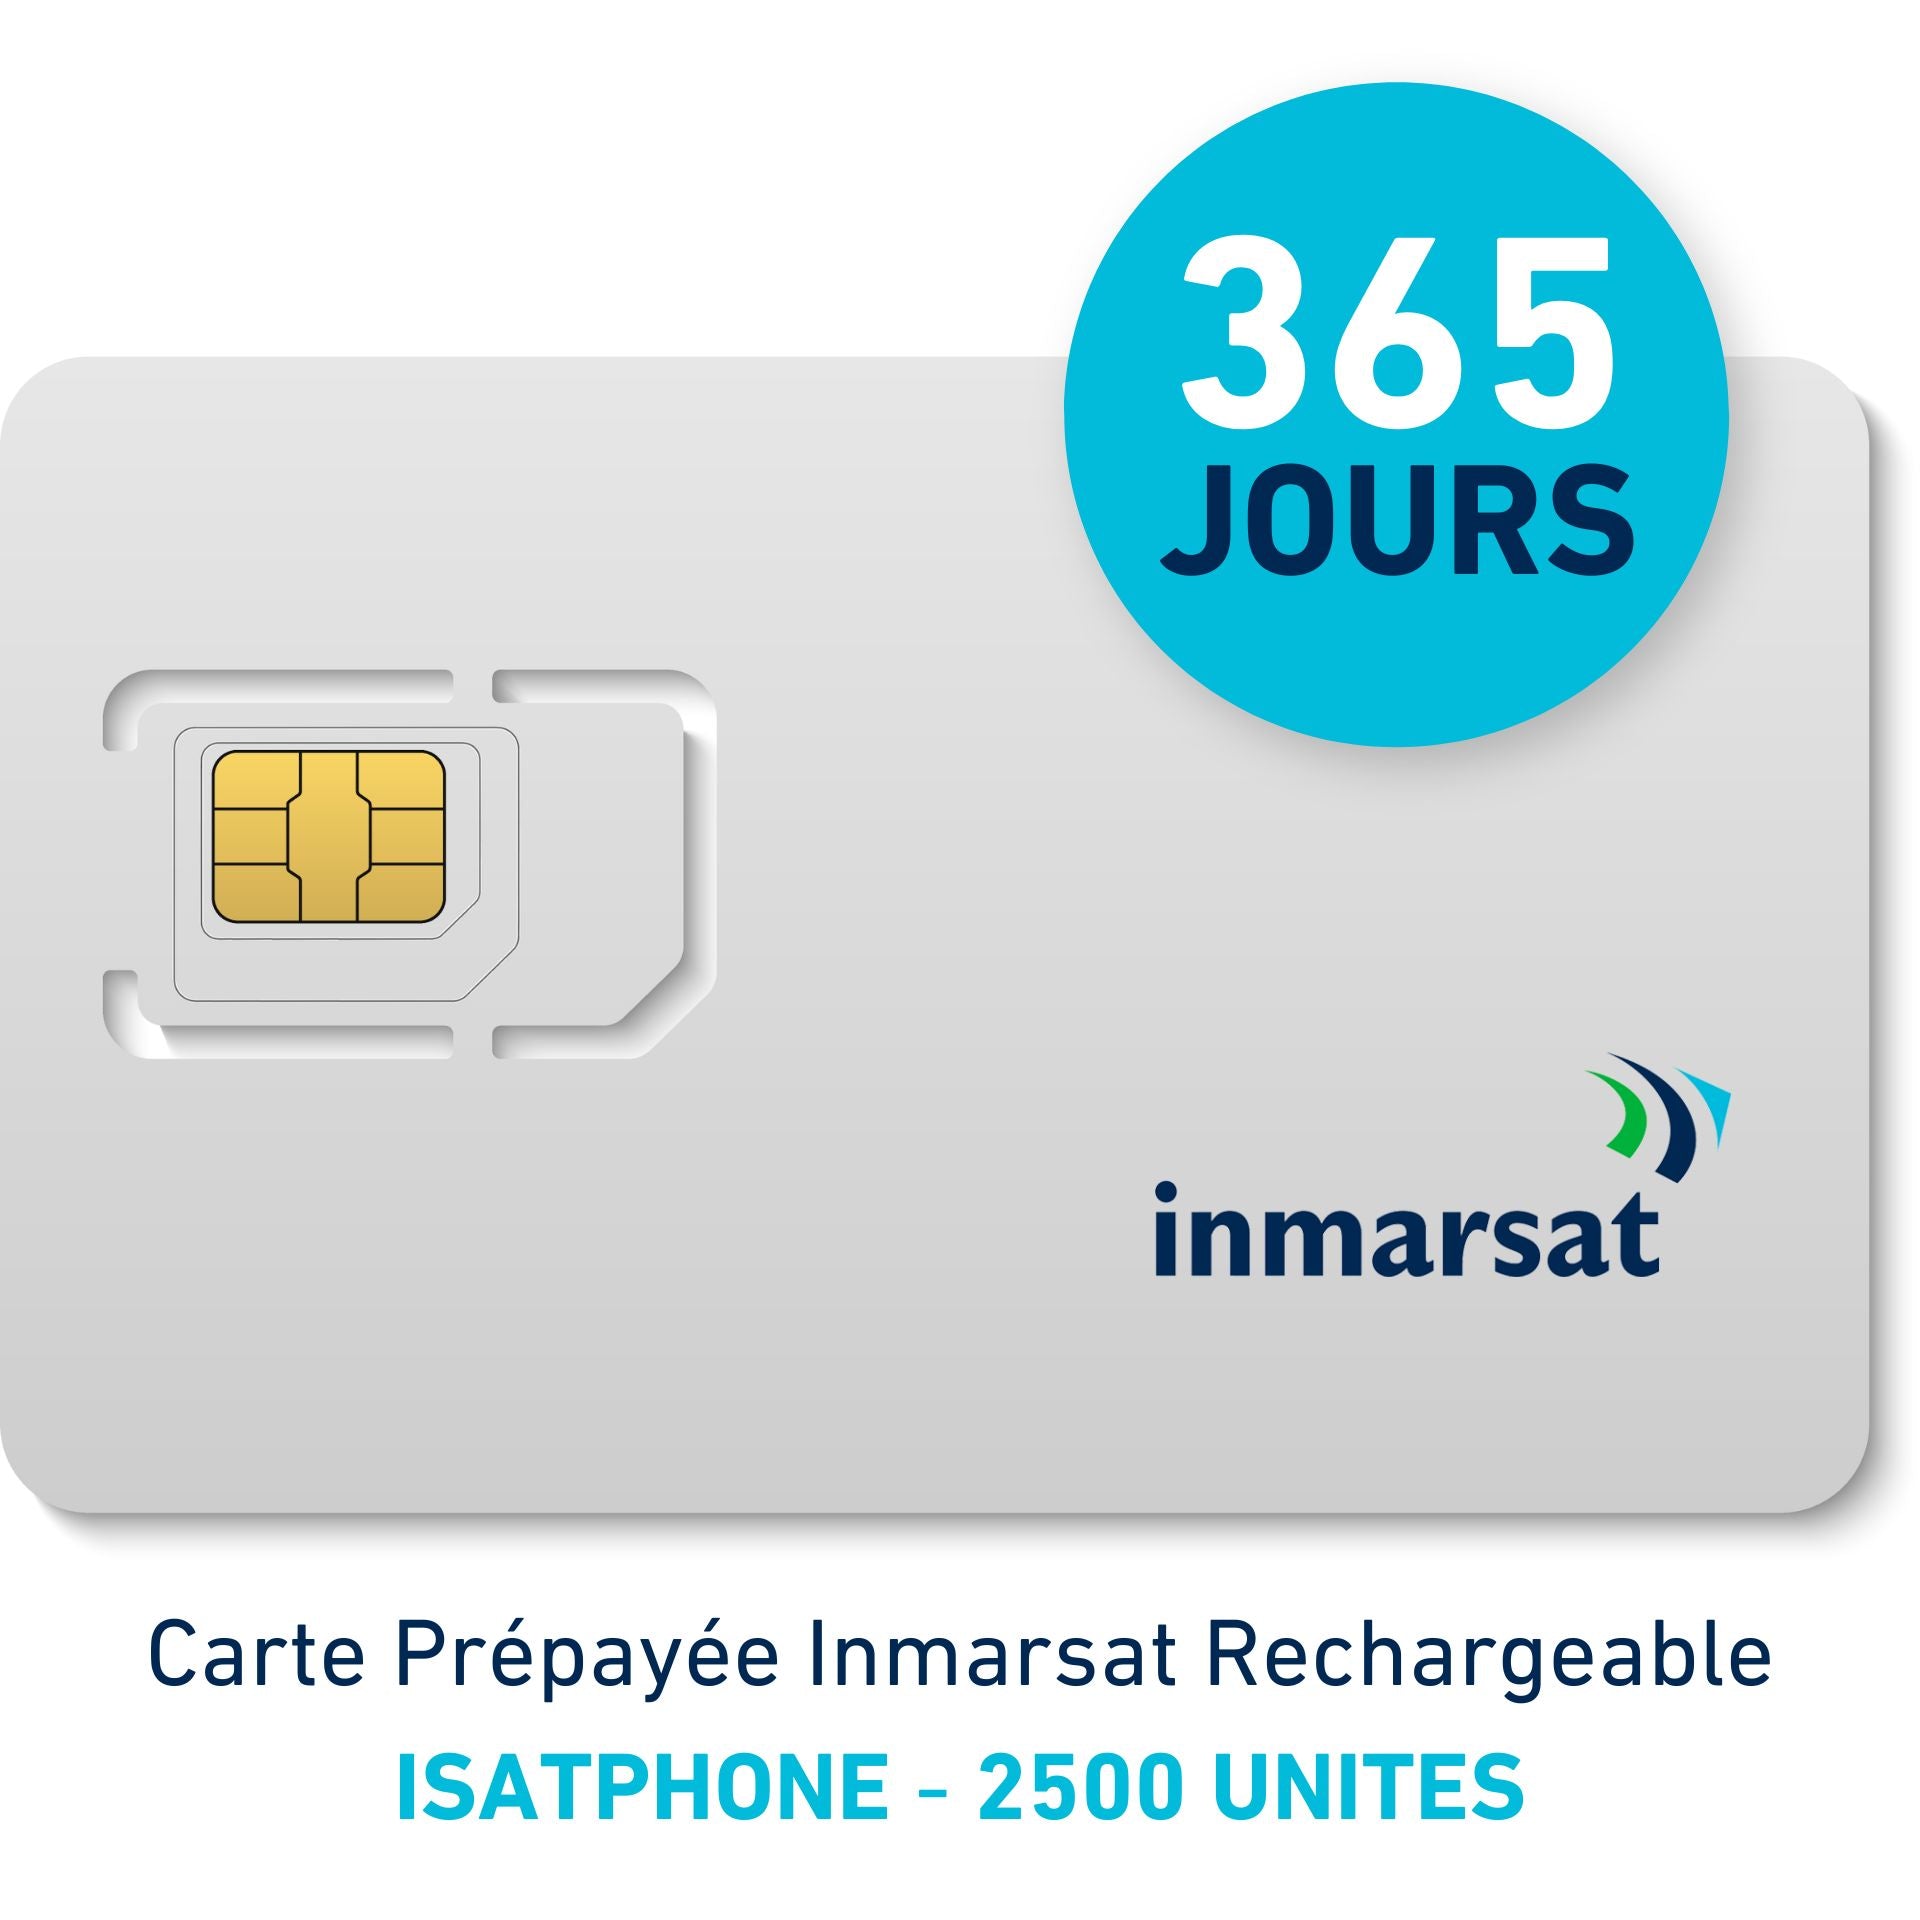 INMARSAT Prepaid-Karte Aufladbar ISATPHONE - 2500 EINHEITEN - 365 TAGE